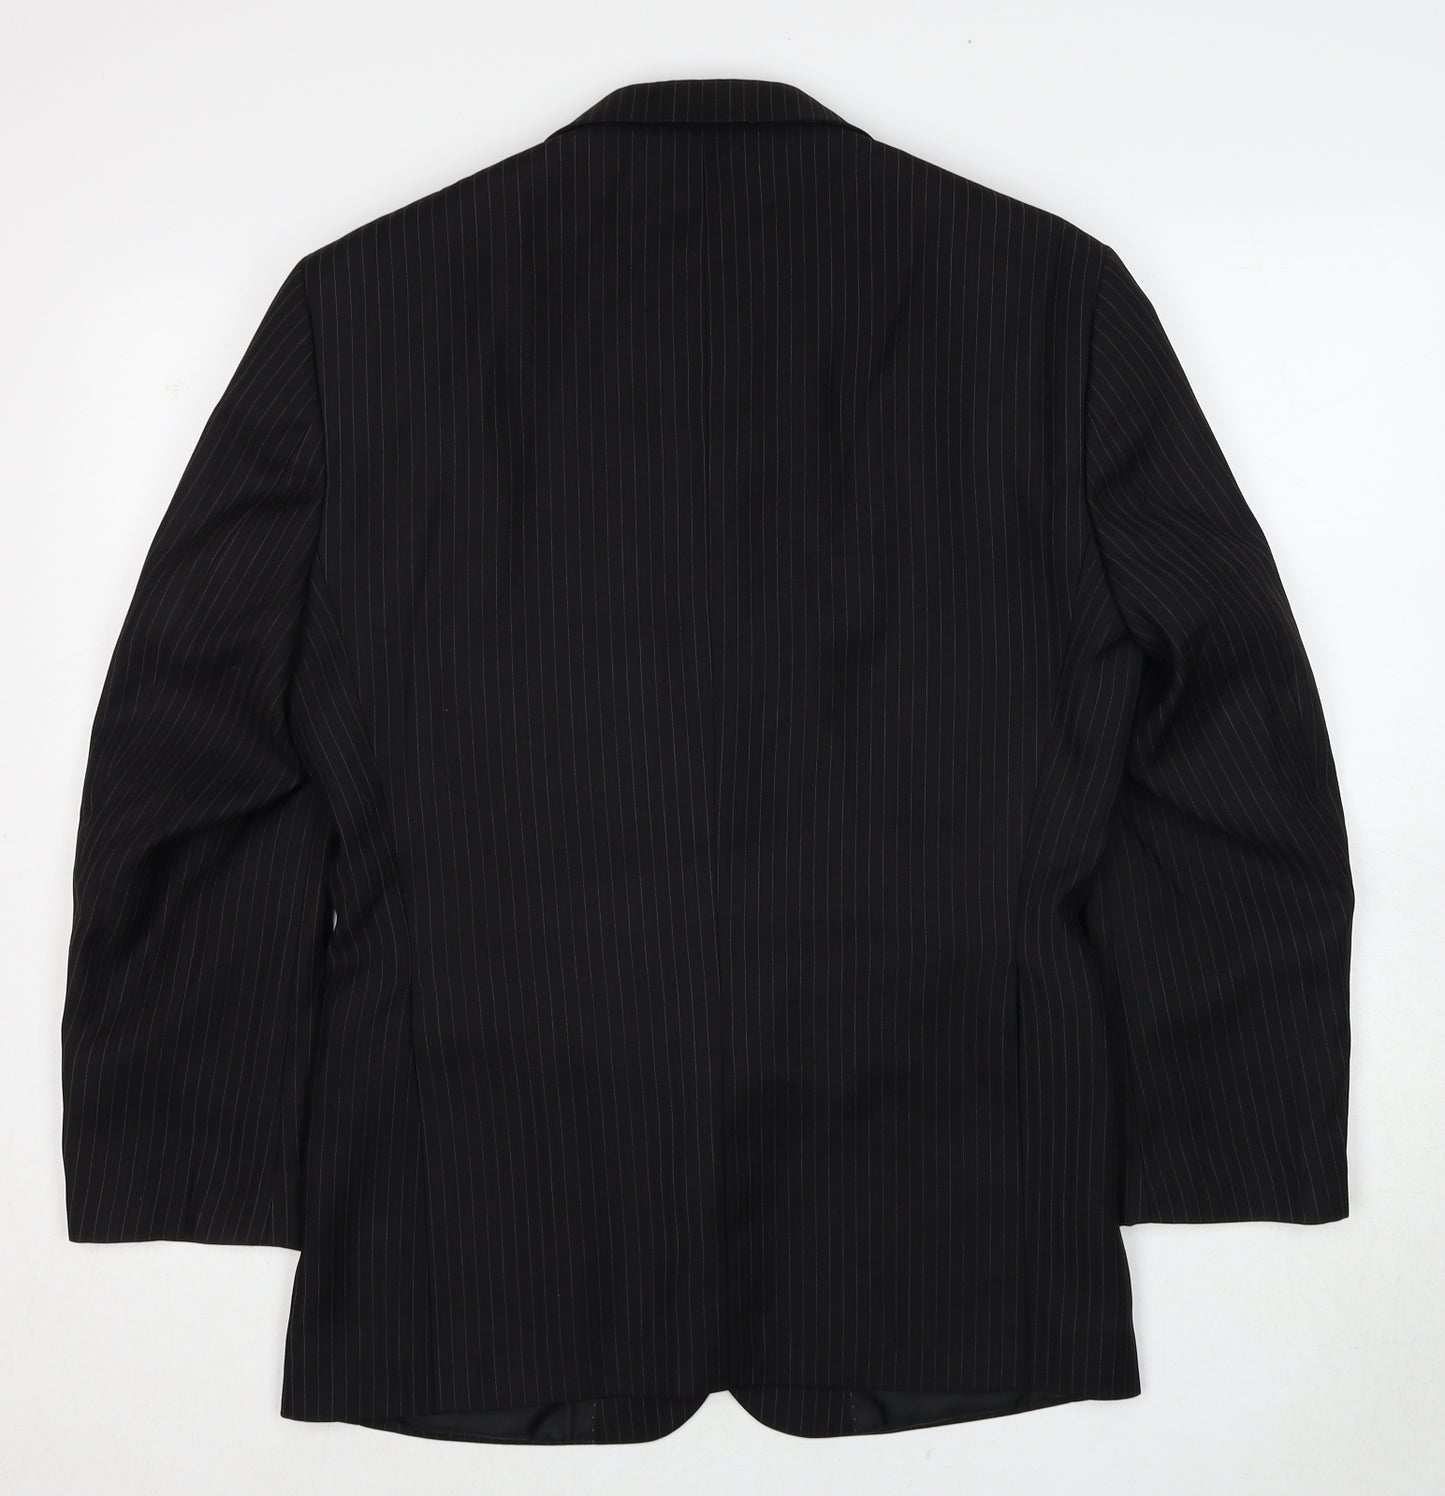 Greenwoods Mens Black Striped Polyester Jacket Suit Jacket Size 36 Regular